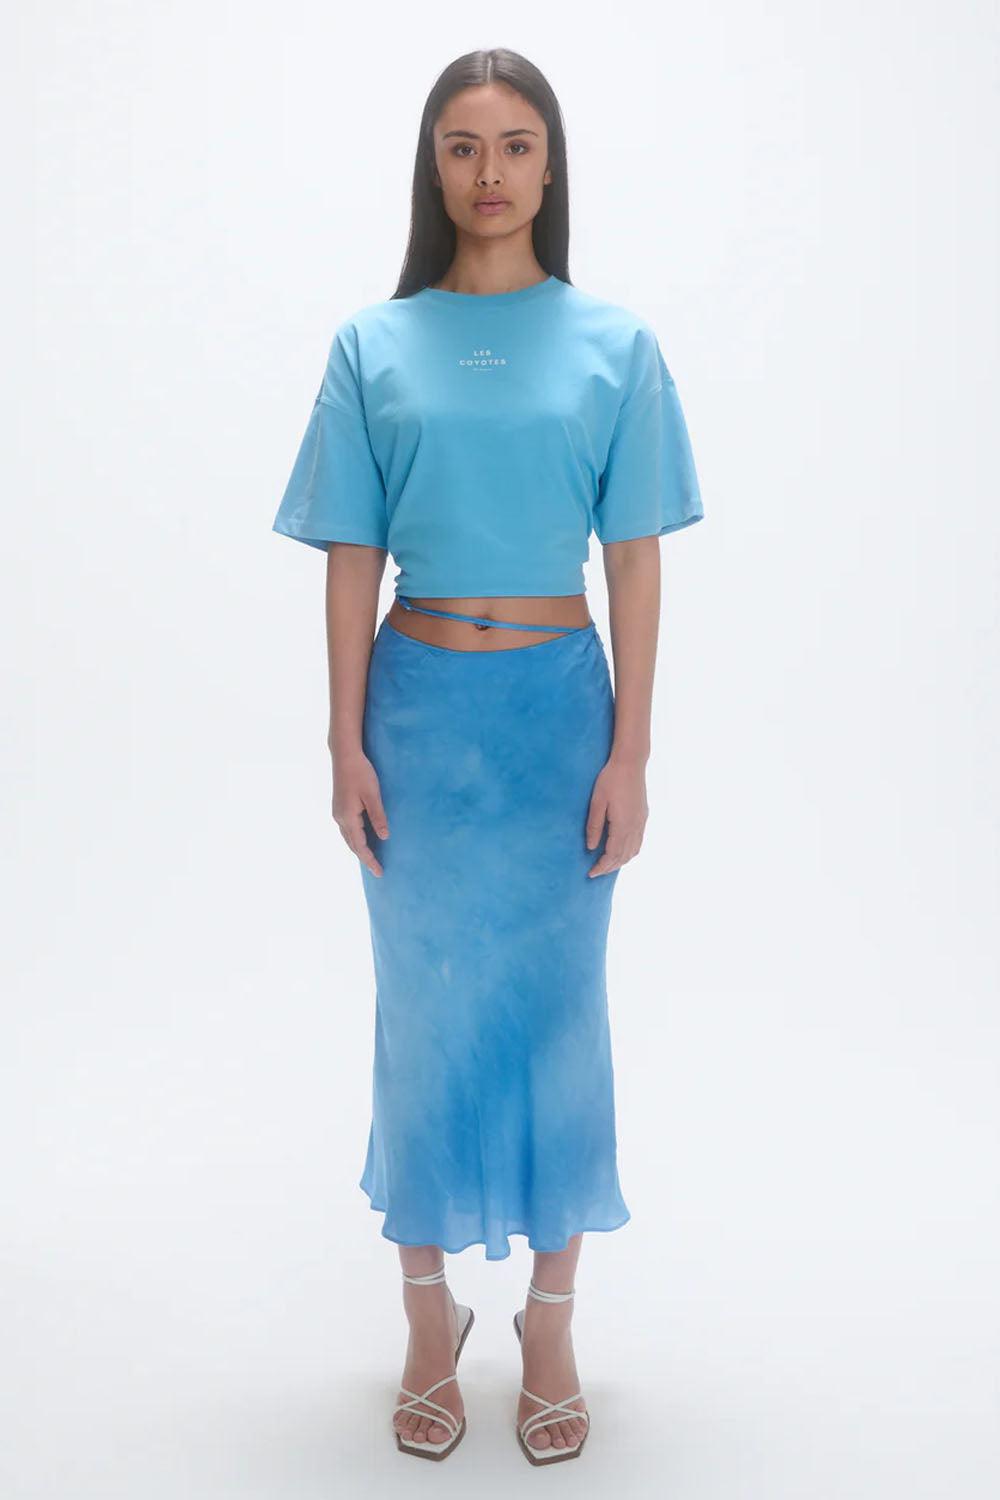 Fluid Skirt maya blue tie dye